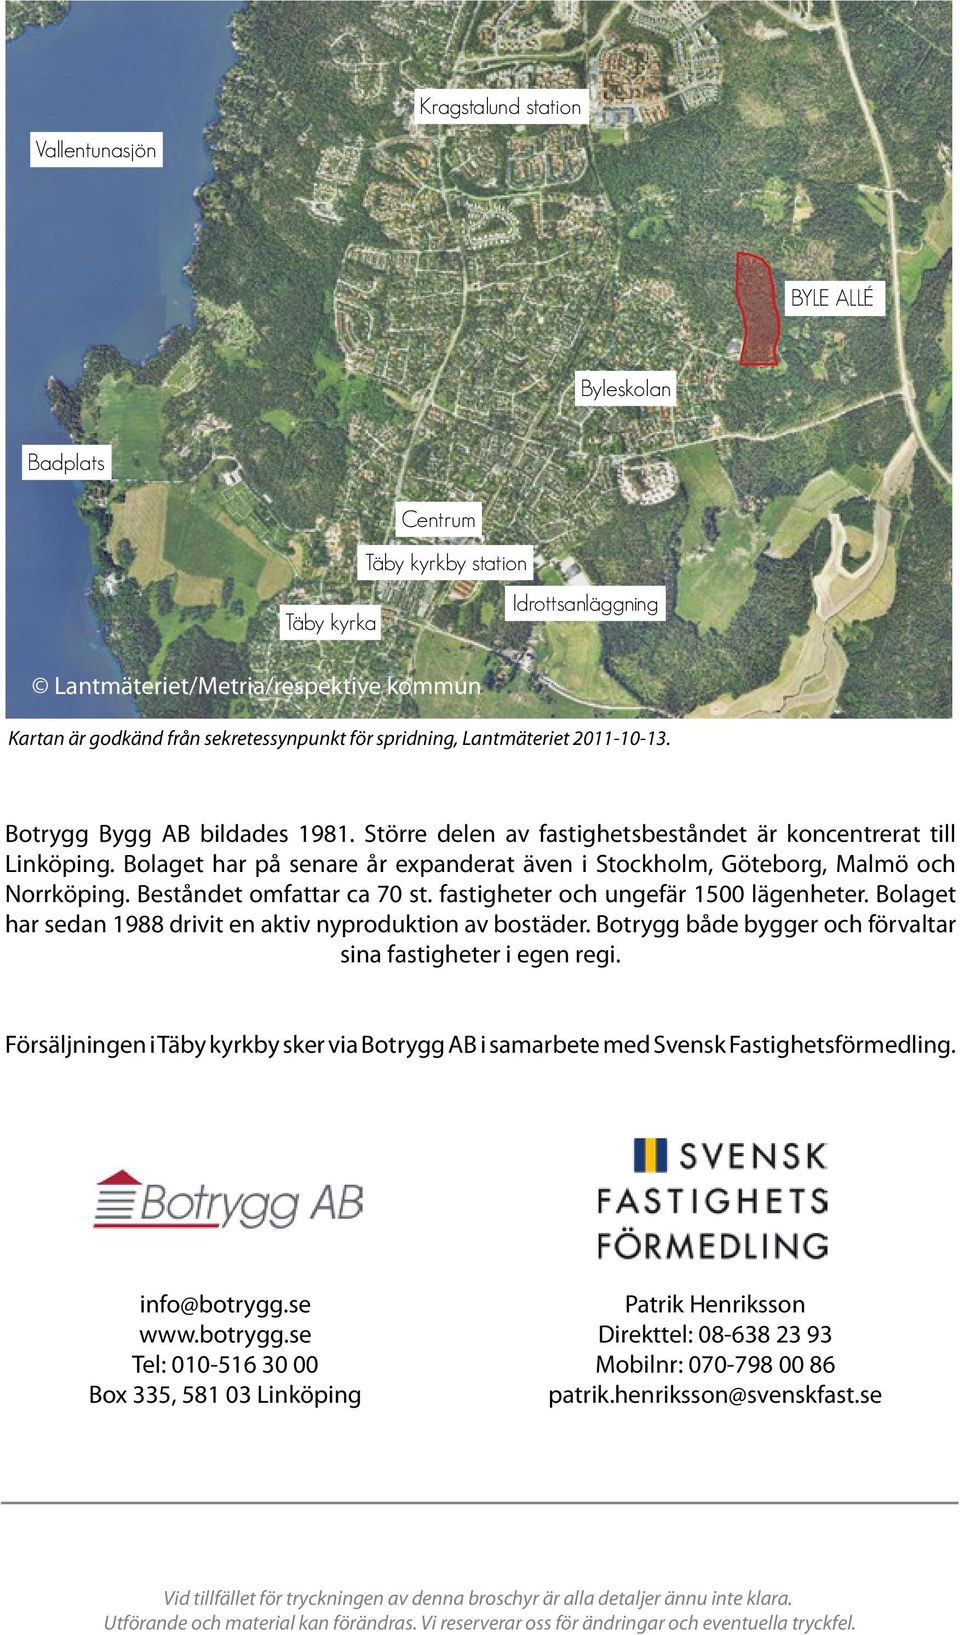 Bolaget har på senare år expanderat även i Stockholm, Göteborg, Malmö och Norrköping. Beståndet omfattar ca 70 st. fastigheter och ungefär 1500 lägenheter.